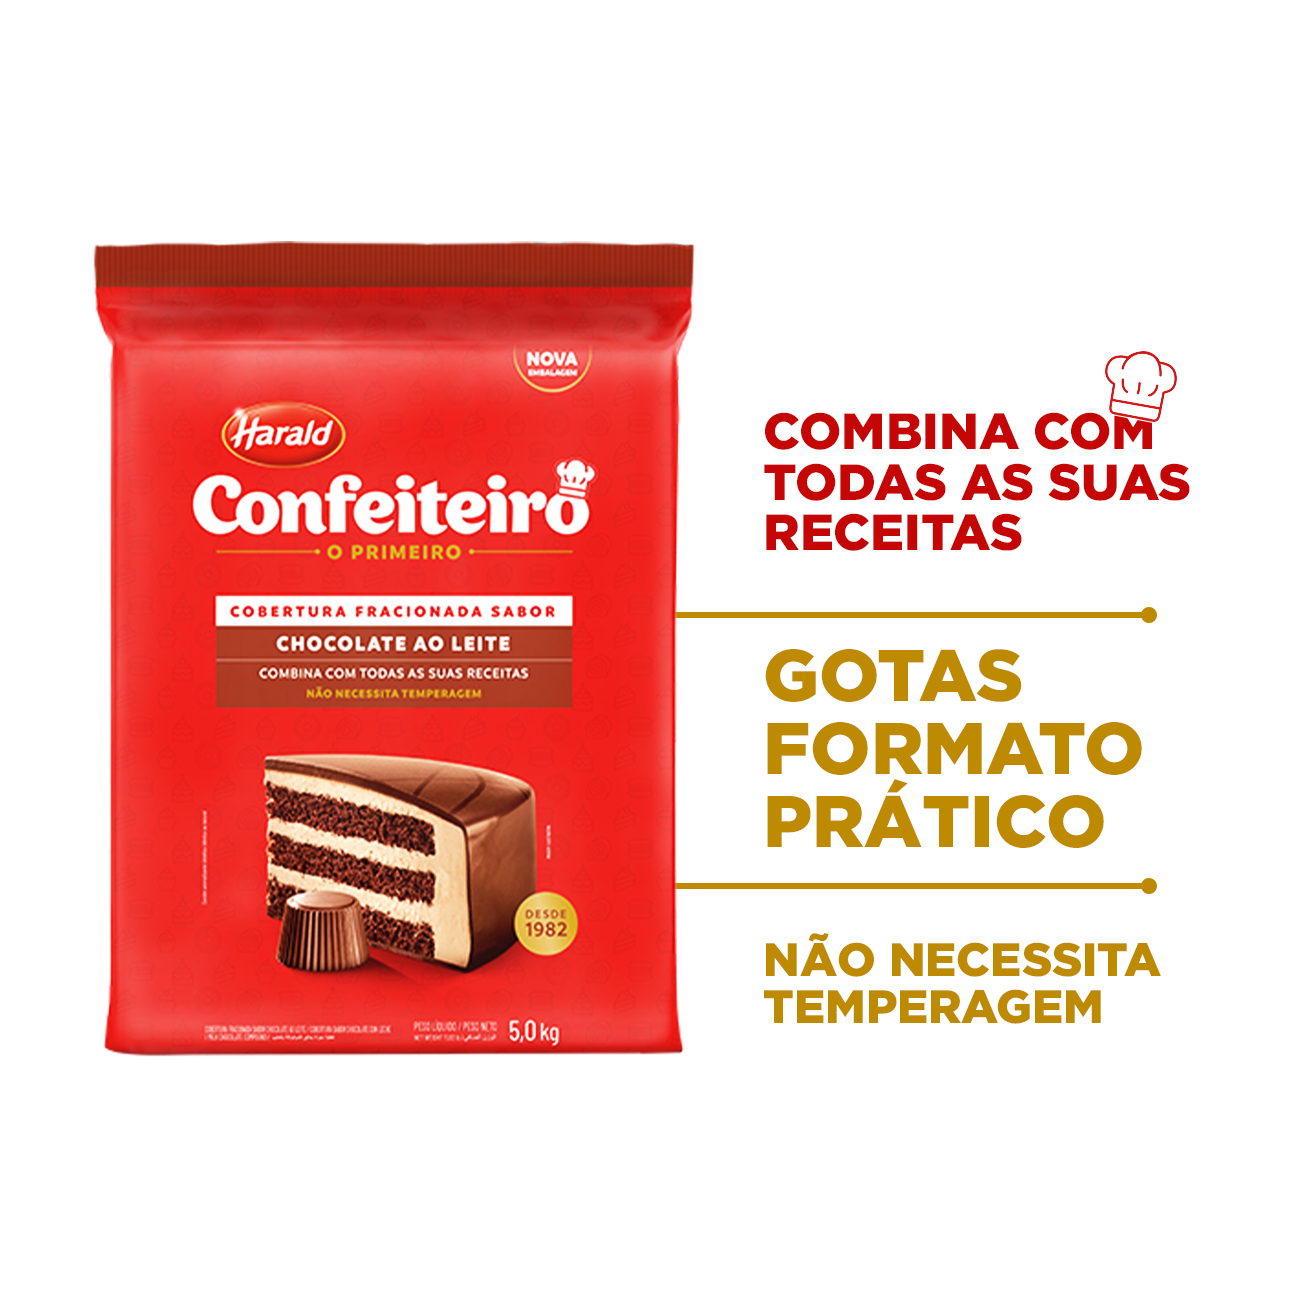 Cobertura de Chocolate em Barra Harald Confeiteiro Fracionada ao Leite 5kg